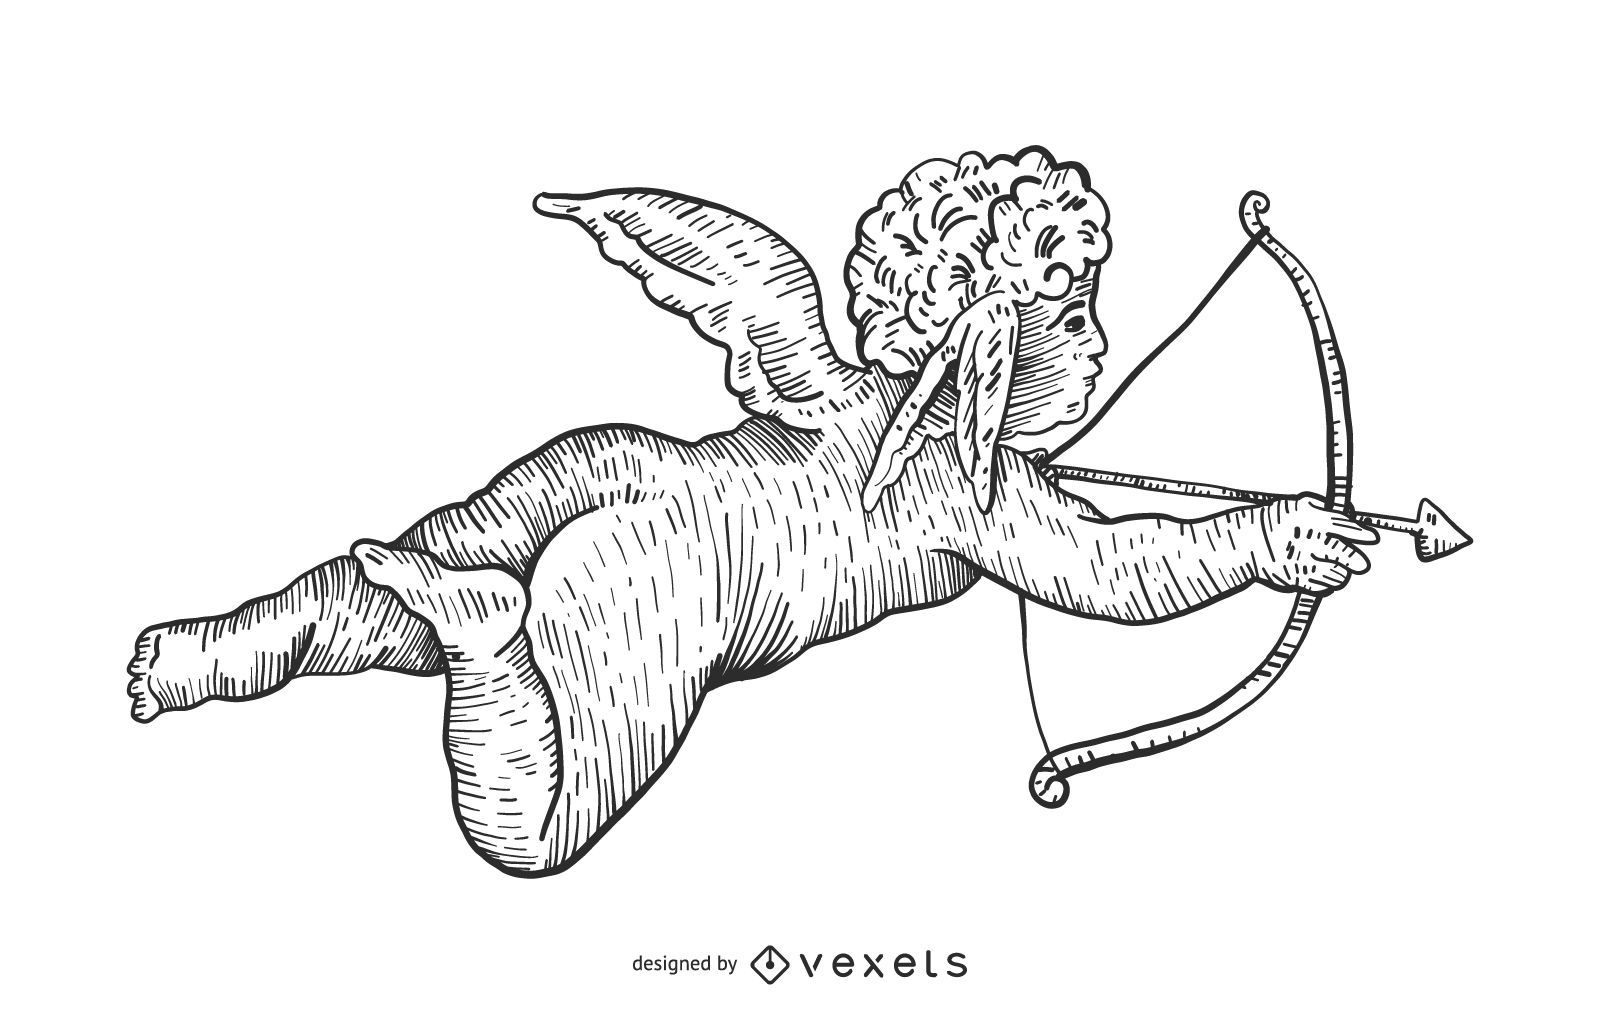 Ilustração desenhada à mão de Cupido